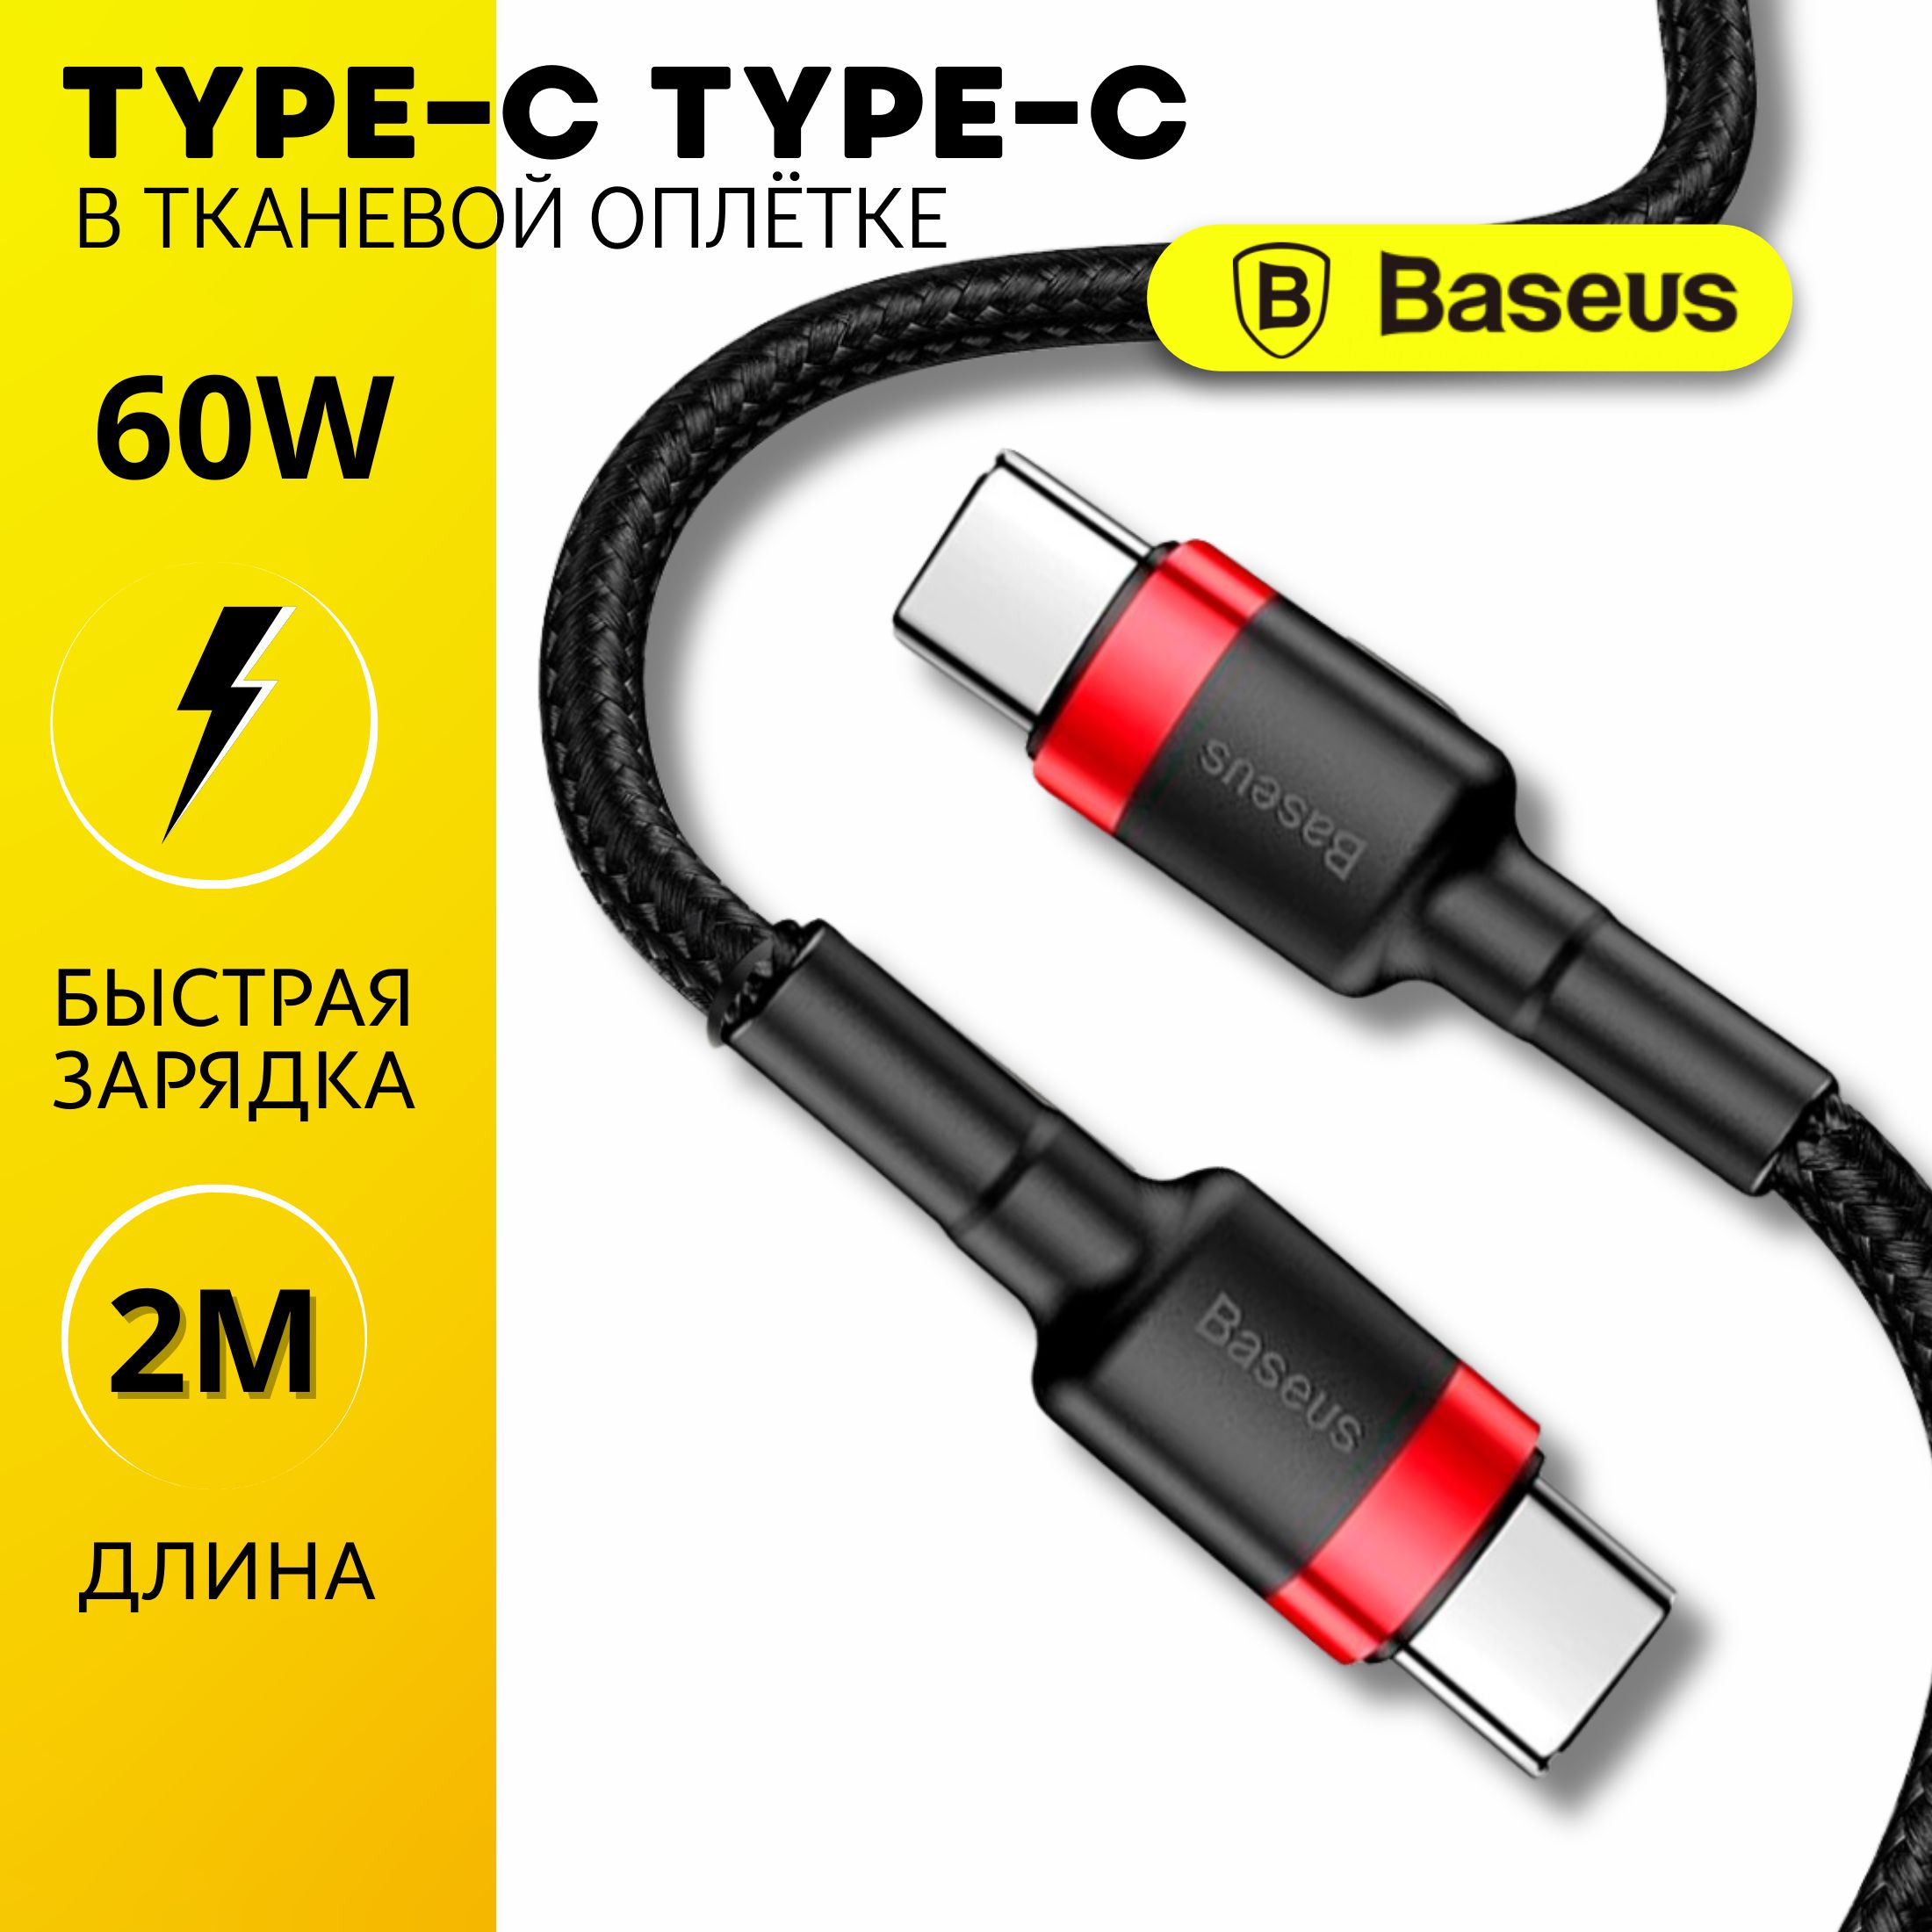 BaseusКабельдлямобильныхустройствUSBType-C/USBType-C,2м,черный,красный